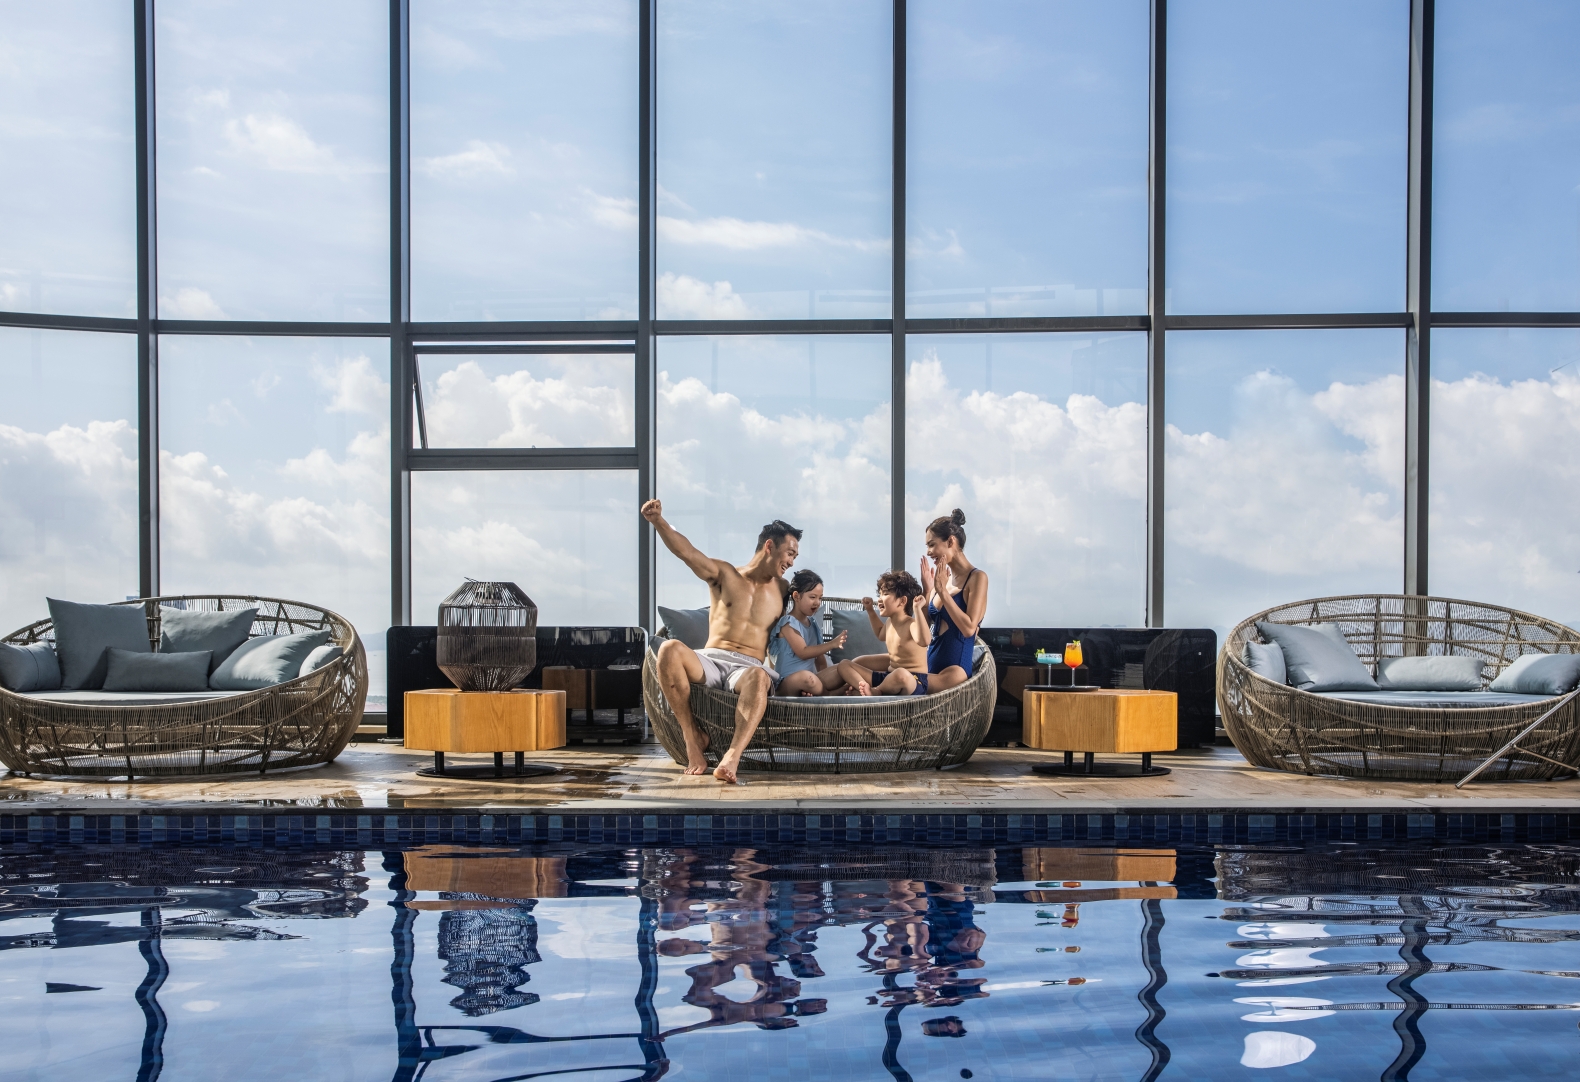 Khách sạn biển đẹp nhất Việt Nam từng nhận cả loạt giải thưởng quốc tế: Rooftop ngắm trọn toàn cảnh vịnh Hạ Long, có bãi biển riêng thỏa sức chơi- Ảnh 9.